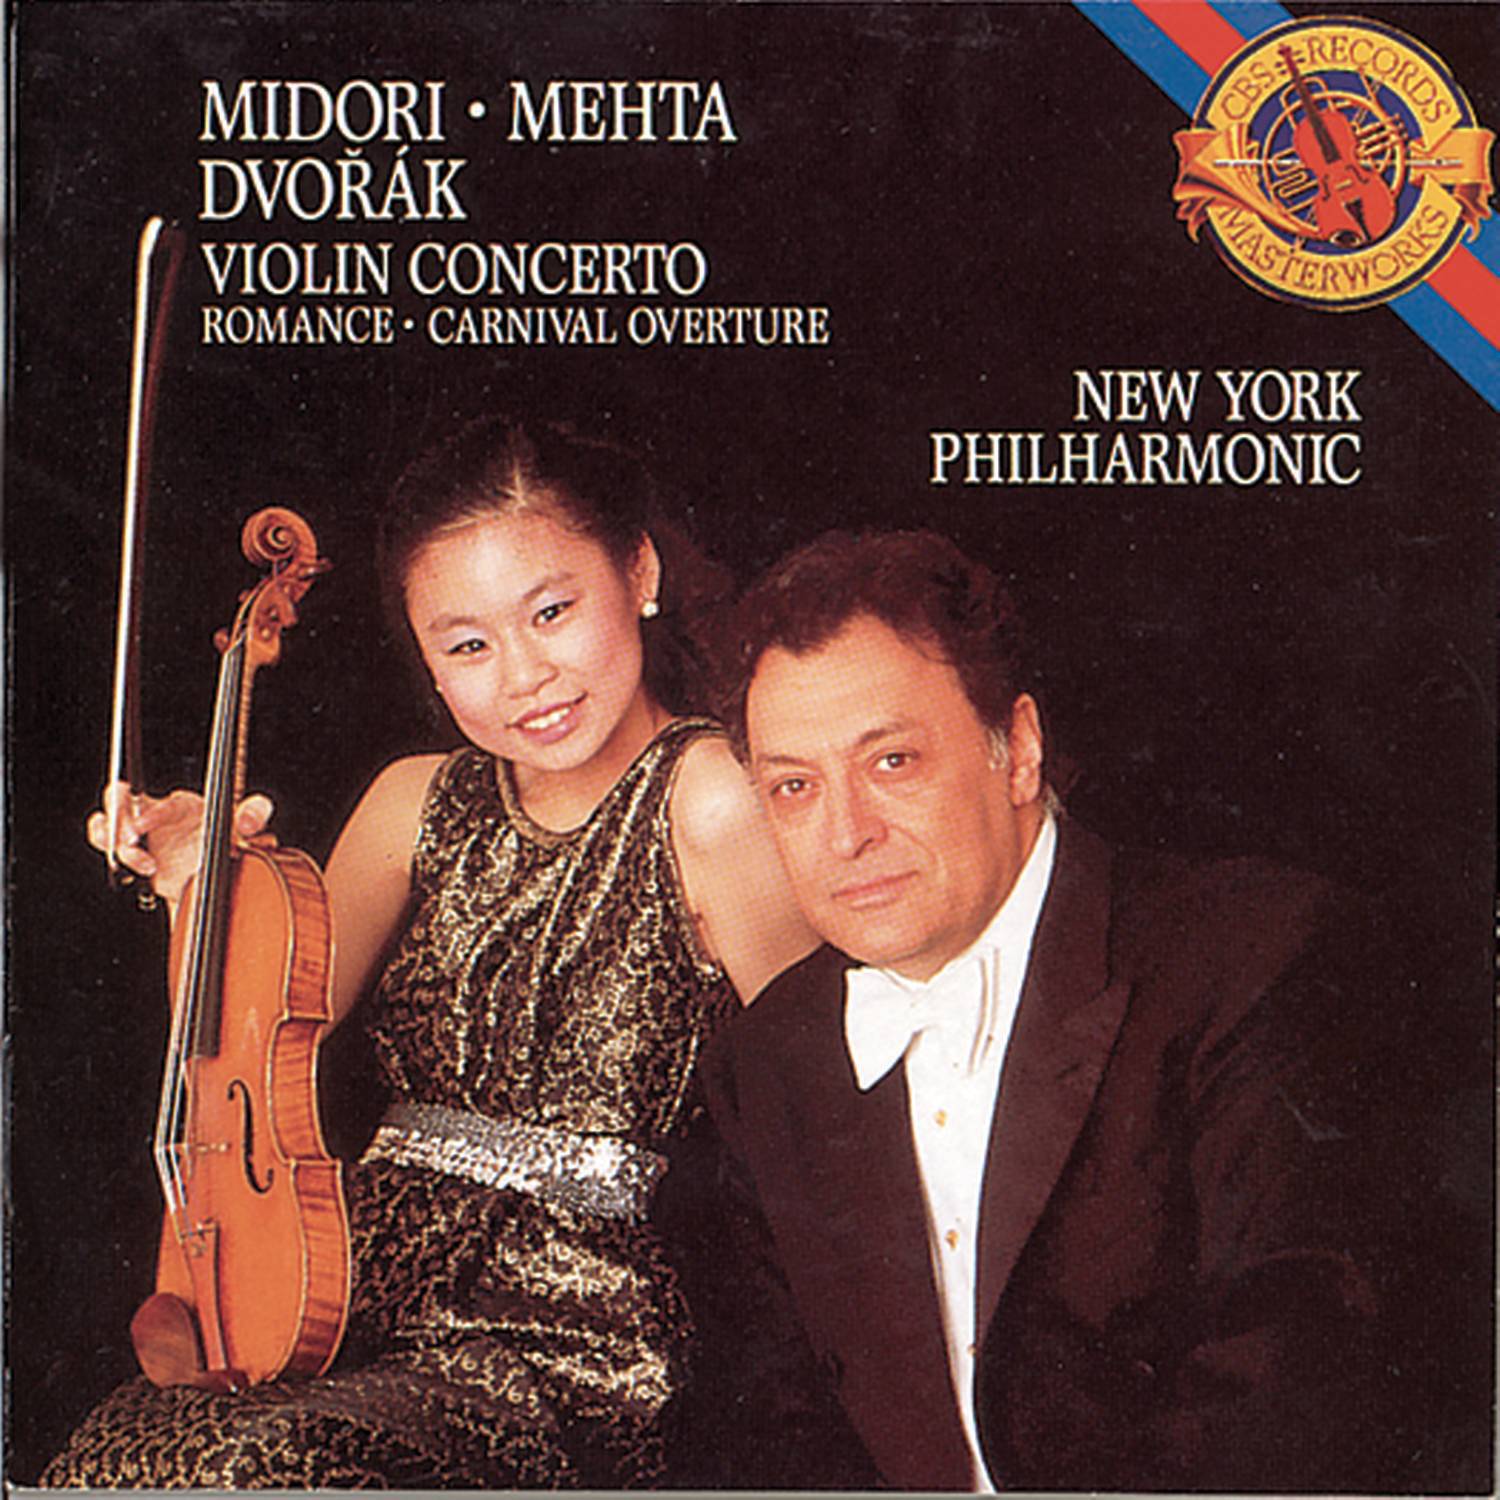 Concerto for Violin and Orchestra in A Minor, Op. 53: III. Finale: Allegro giocoso ma non troppo